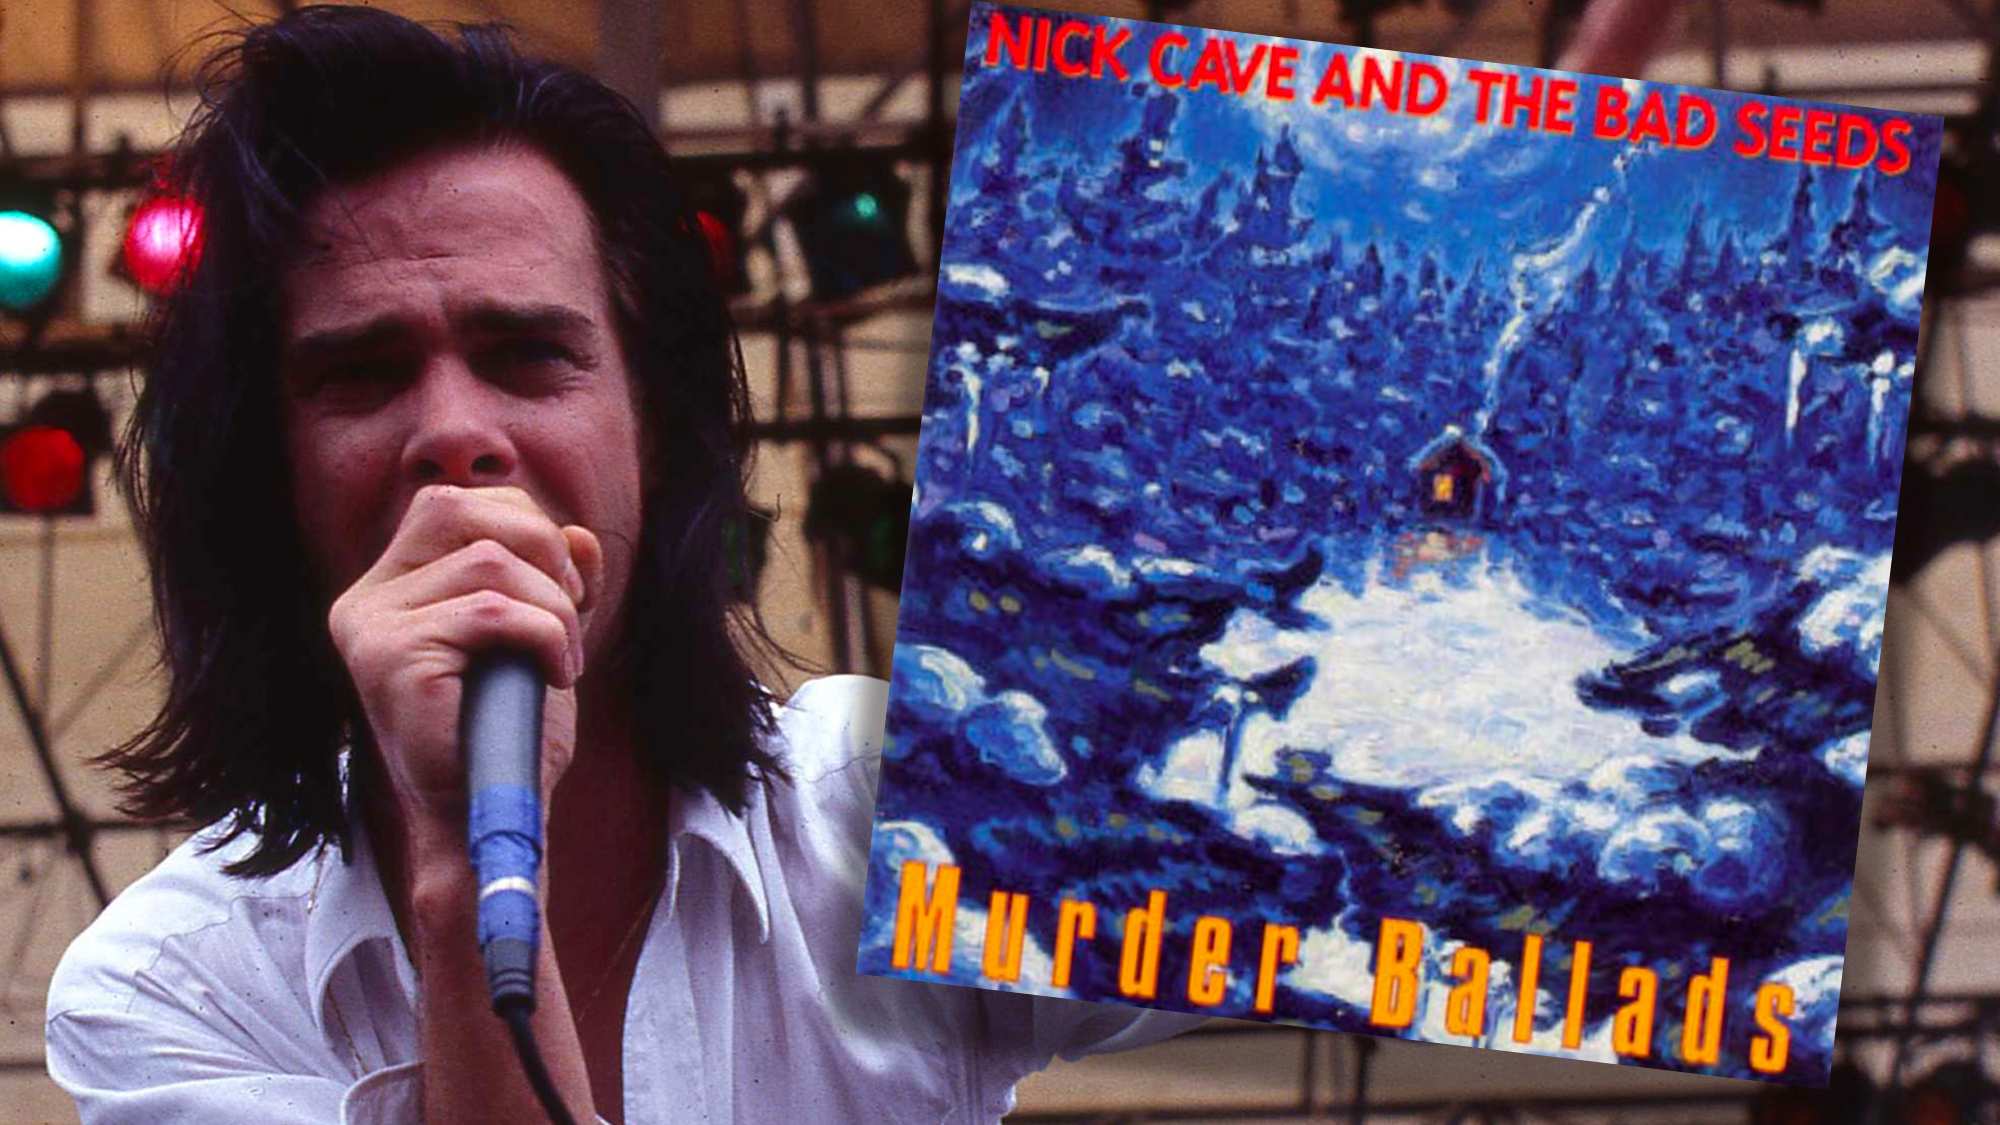 Nick Cave's Murder Ballads